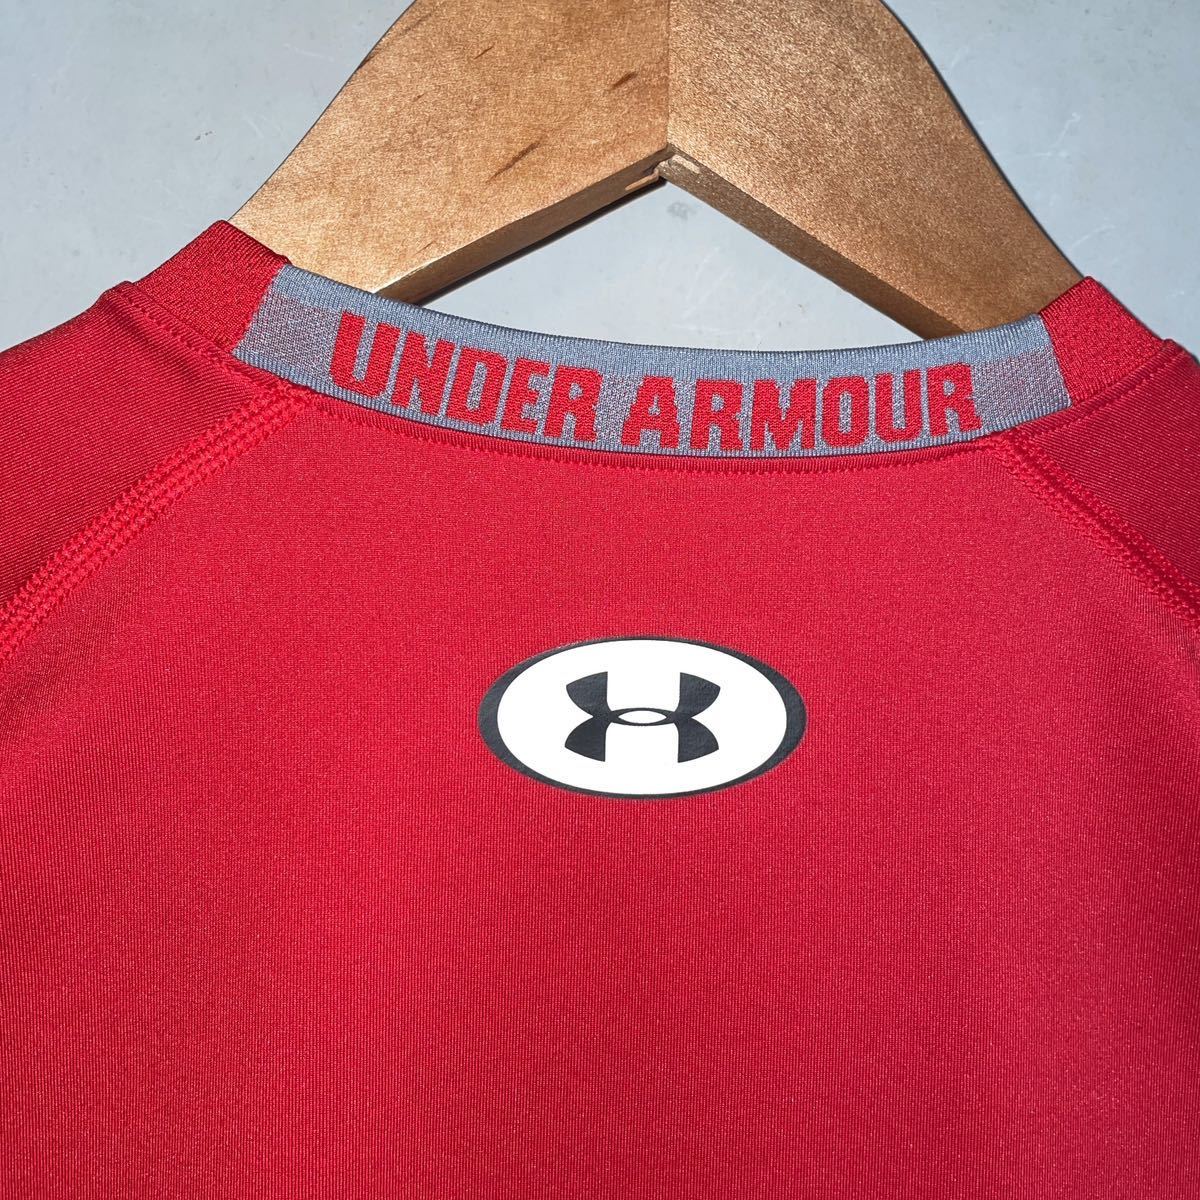 UNDER ARMOUR アンダーアーマー コンプレッション ヒートギア 赤 レッド メンズ SMサイズ 半袖 クルーネック トレーニング